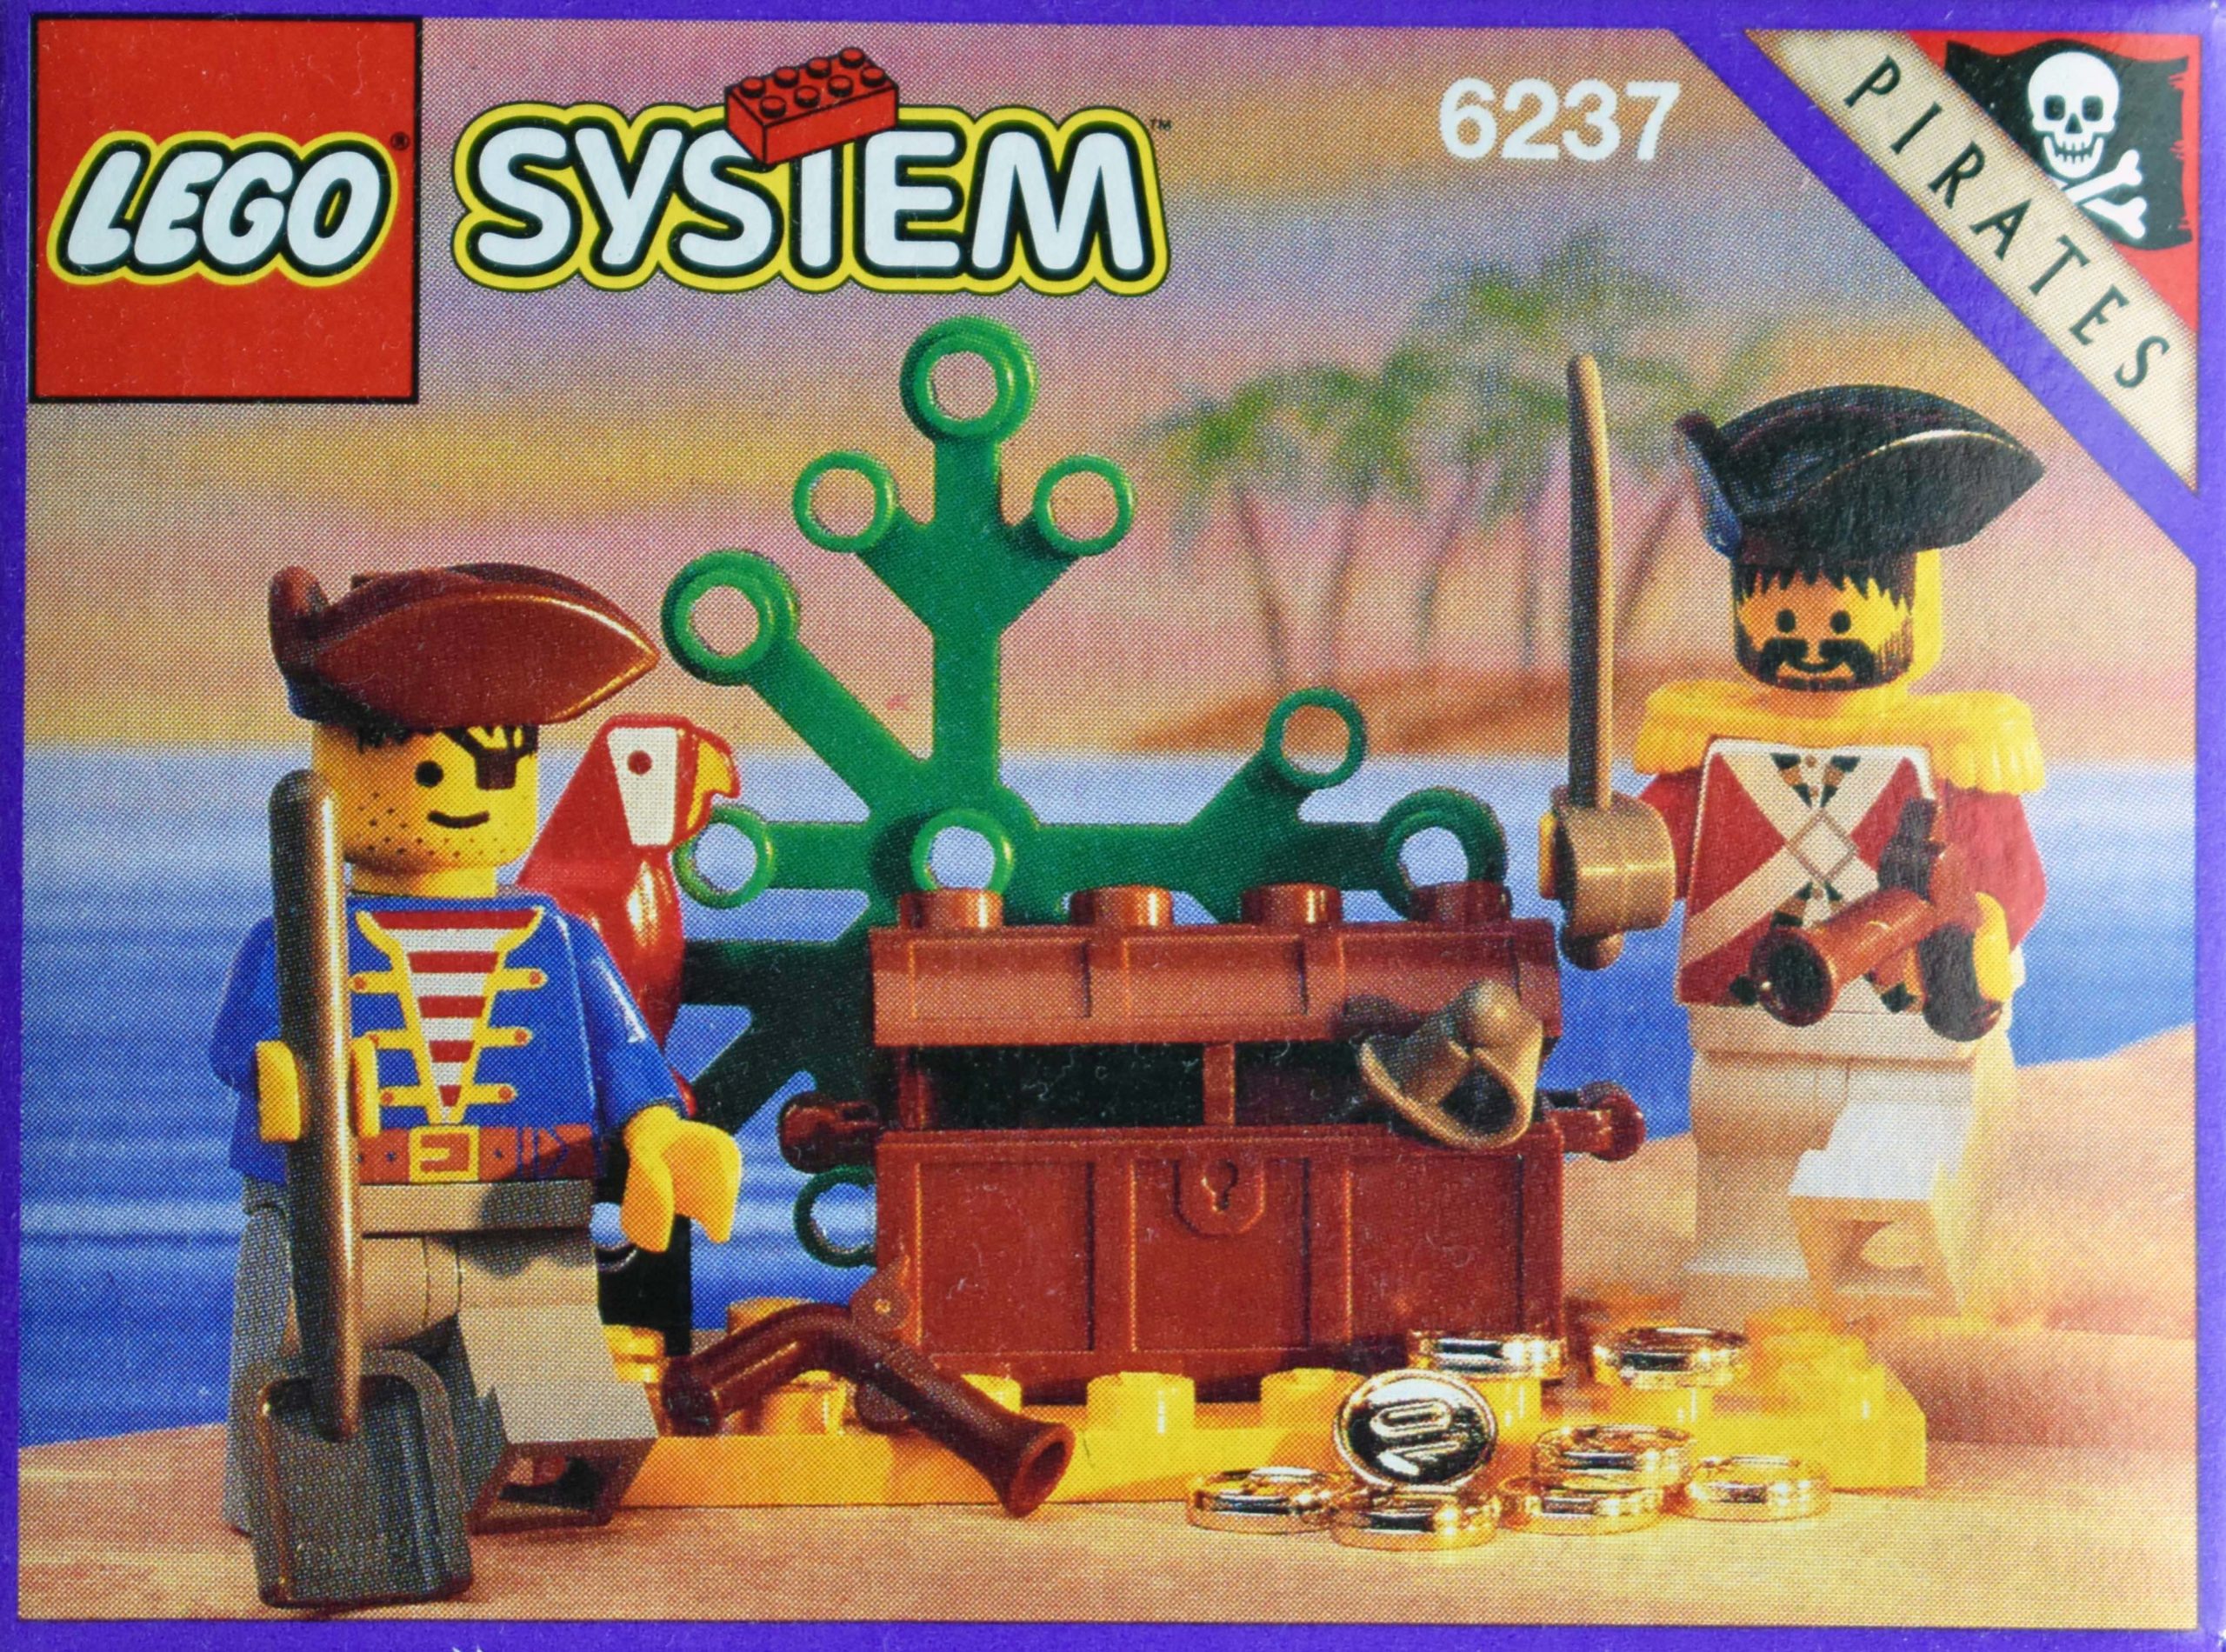 6237: Pirates’ Plunder